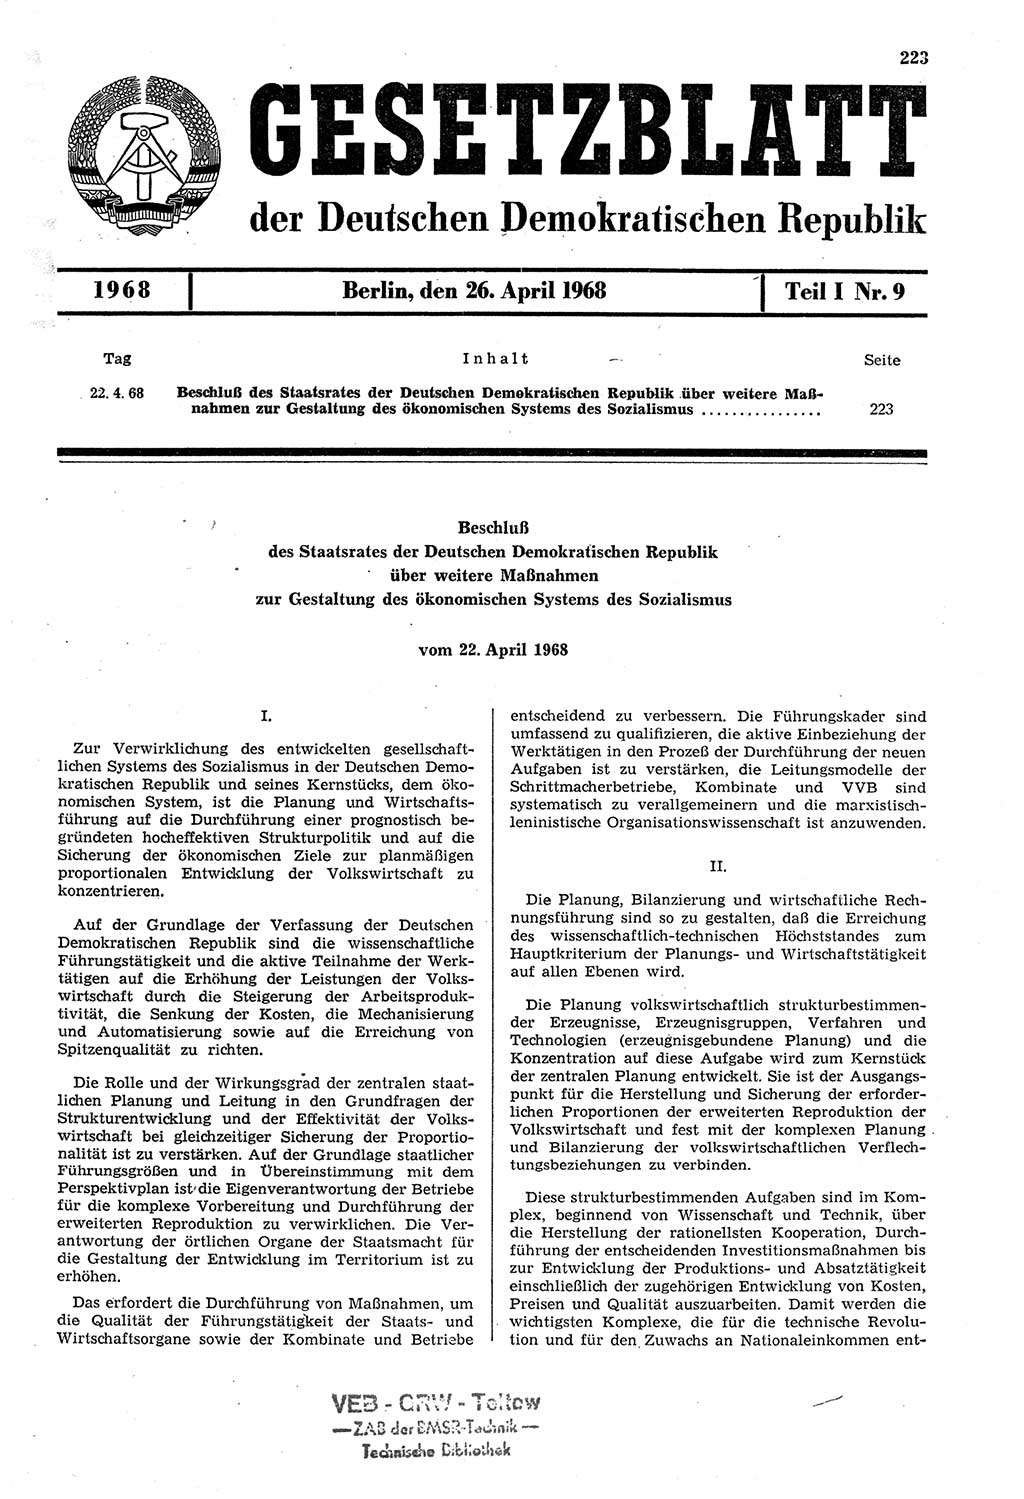 Gesetzblatt (GBl.) der Deutschen Demokratischen Republik (DDR) Teil Ⅰ 1968, Seite 223 (GBl. DDR Ⅰ 1968, S. 223)